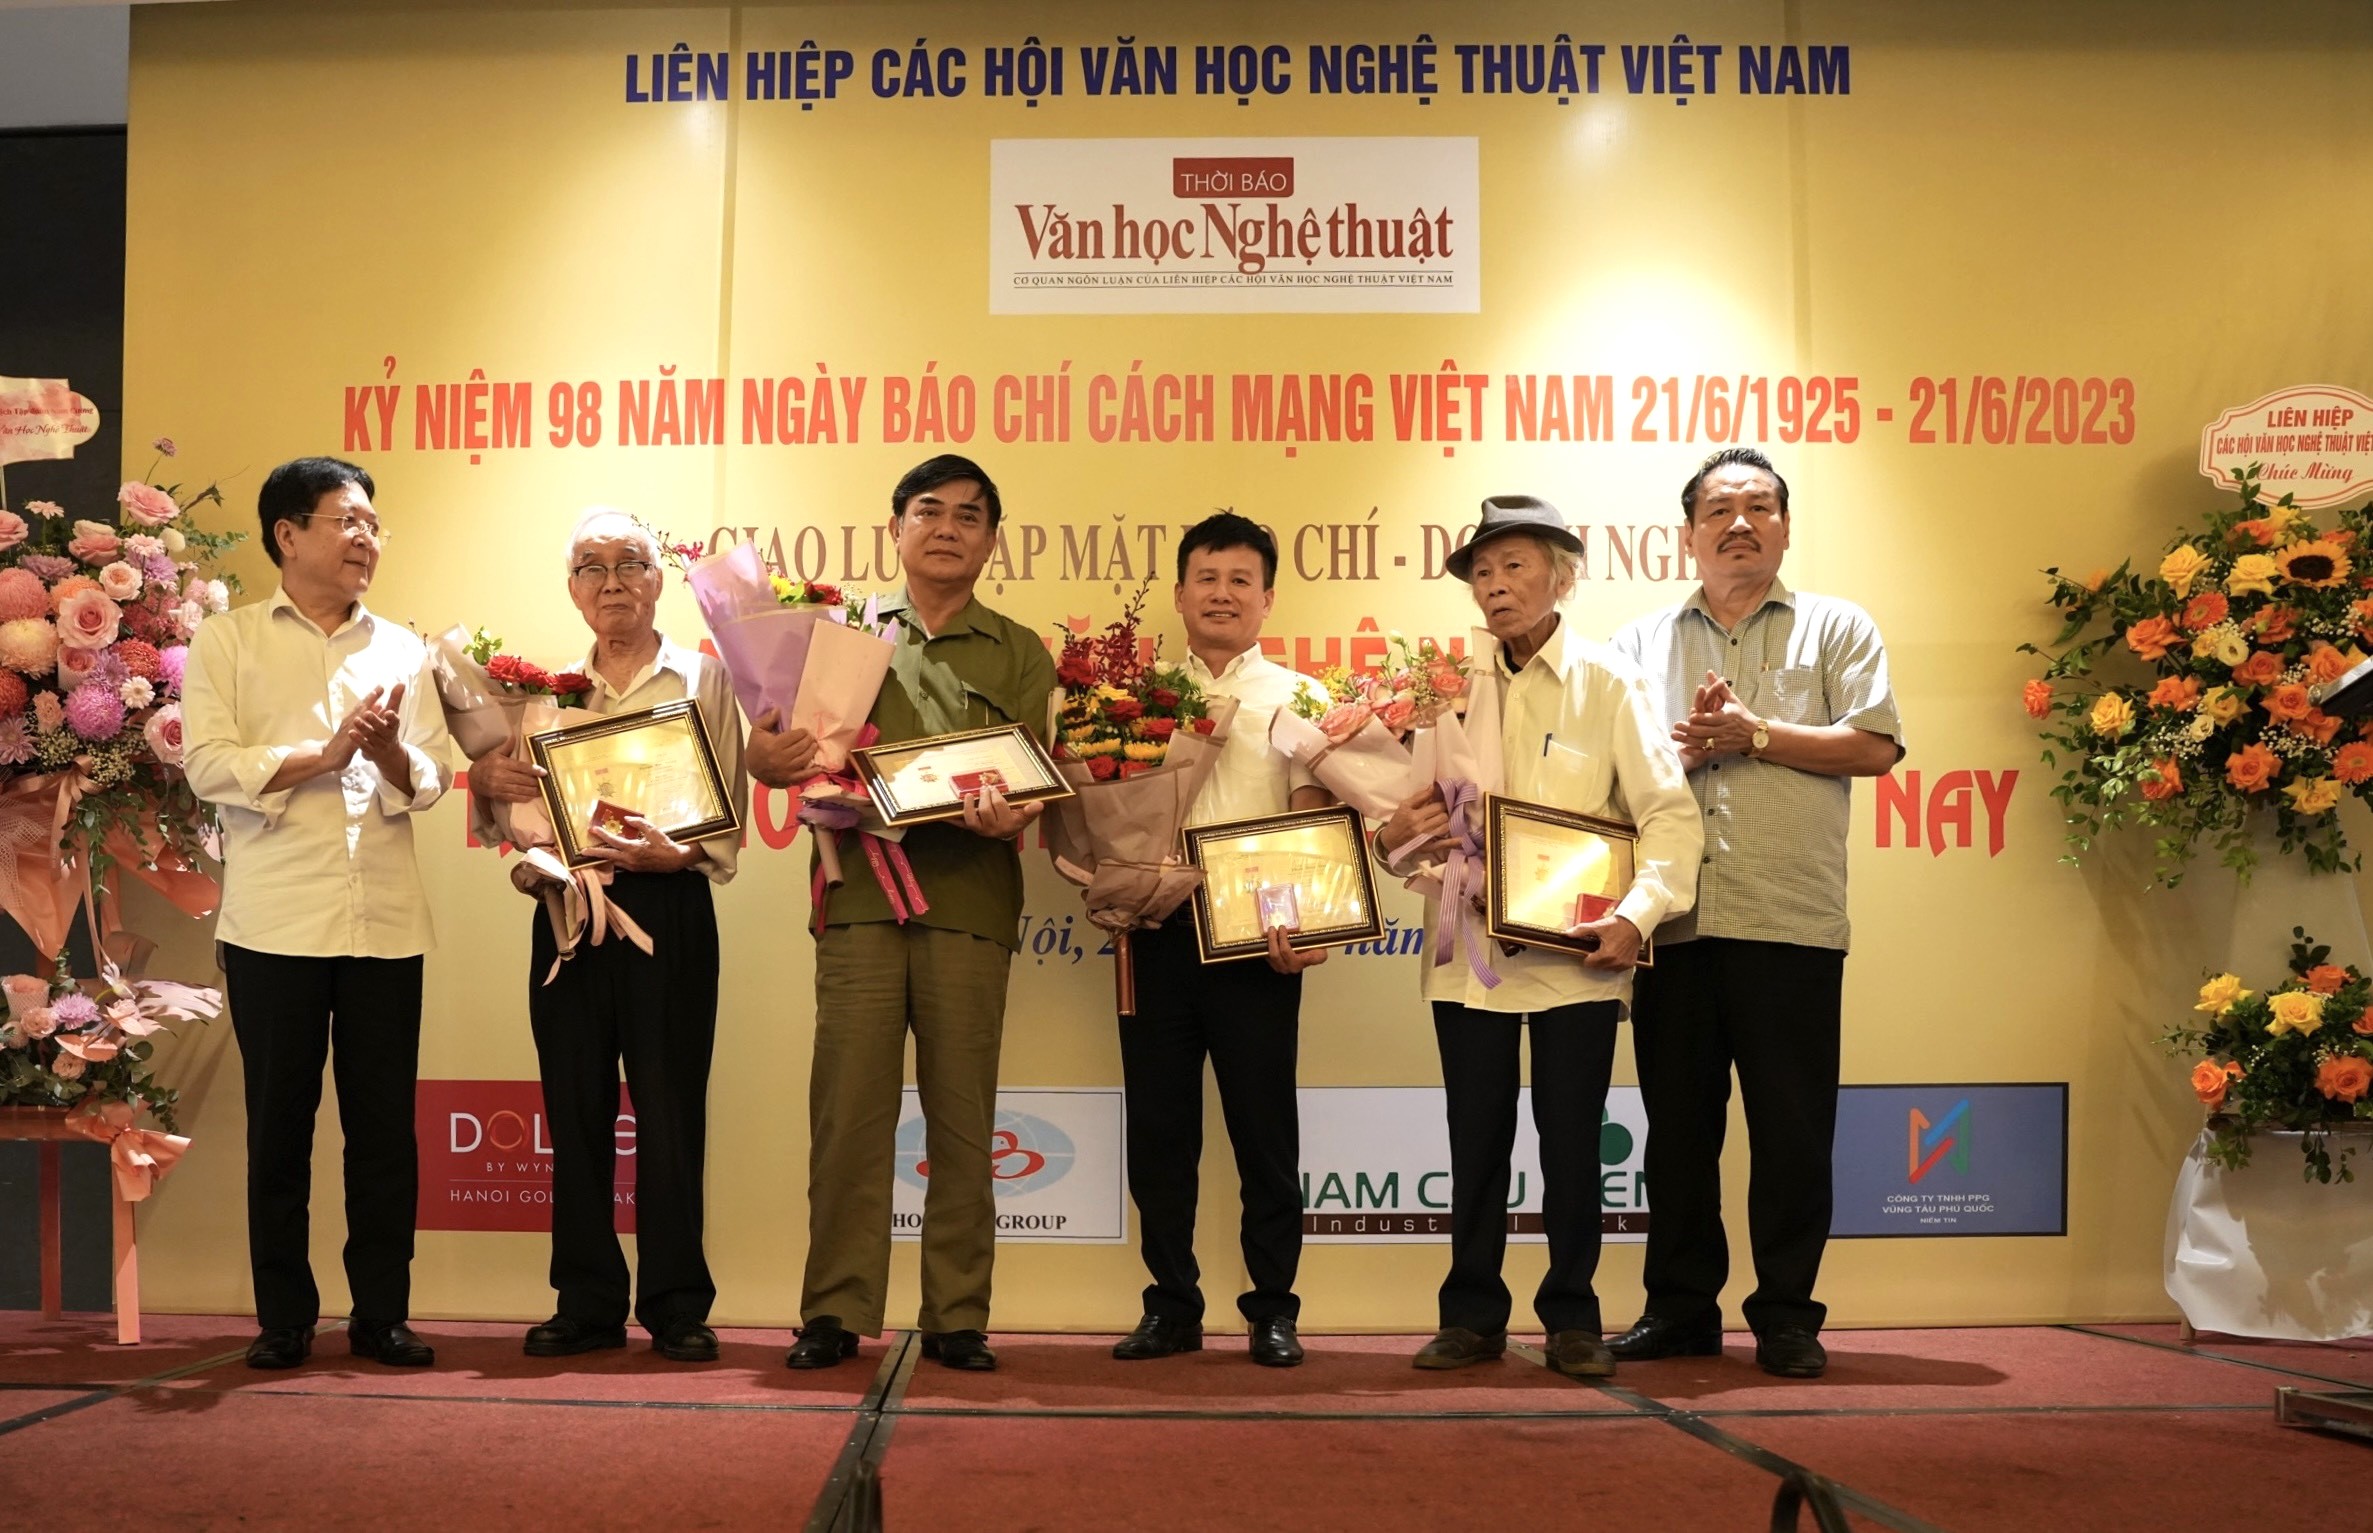 Phát huy thế mạnh để phát triển báo chí của Liên hiệp các Hội Văn học nghệ thuật Việt Nam - 4